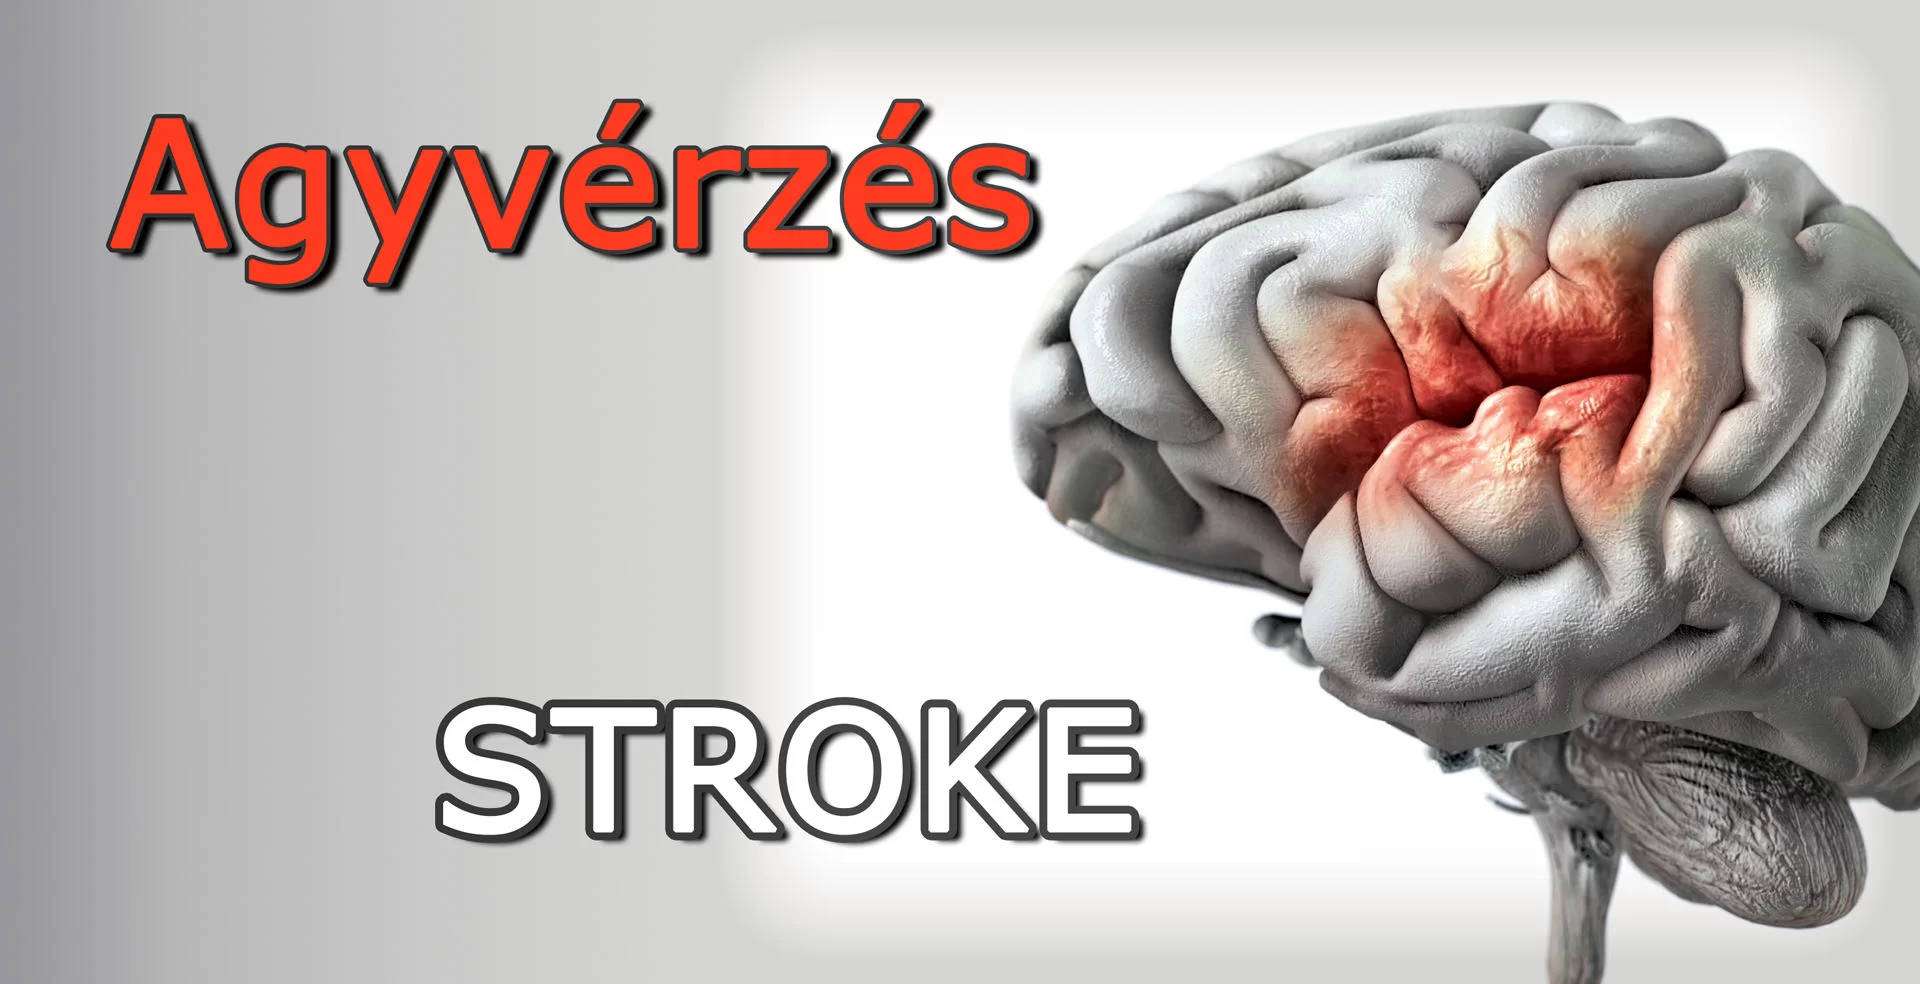 agyvérzés-stroke